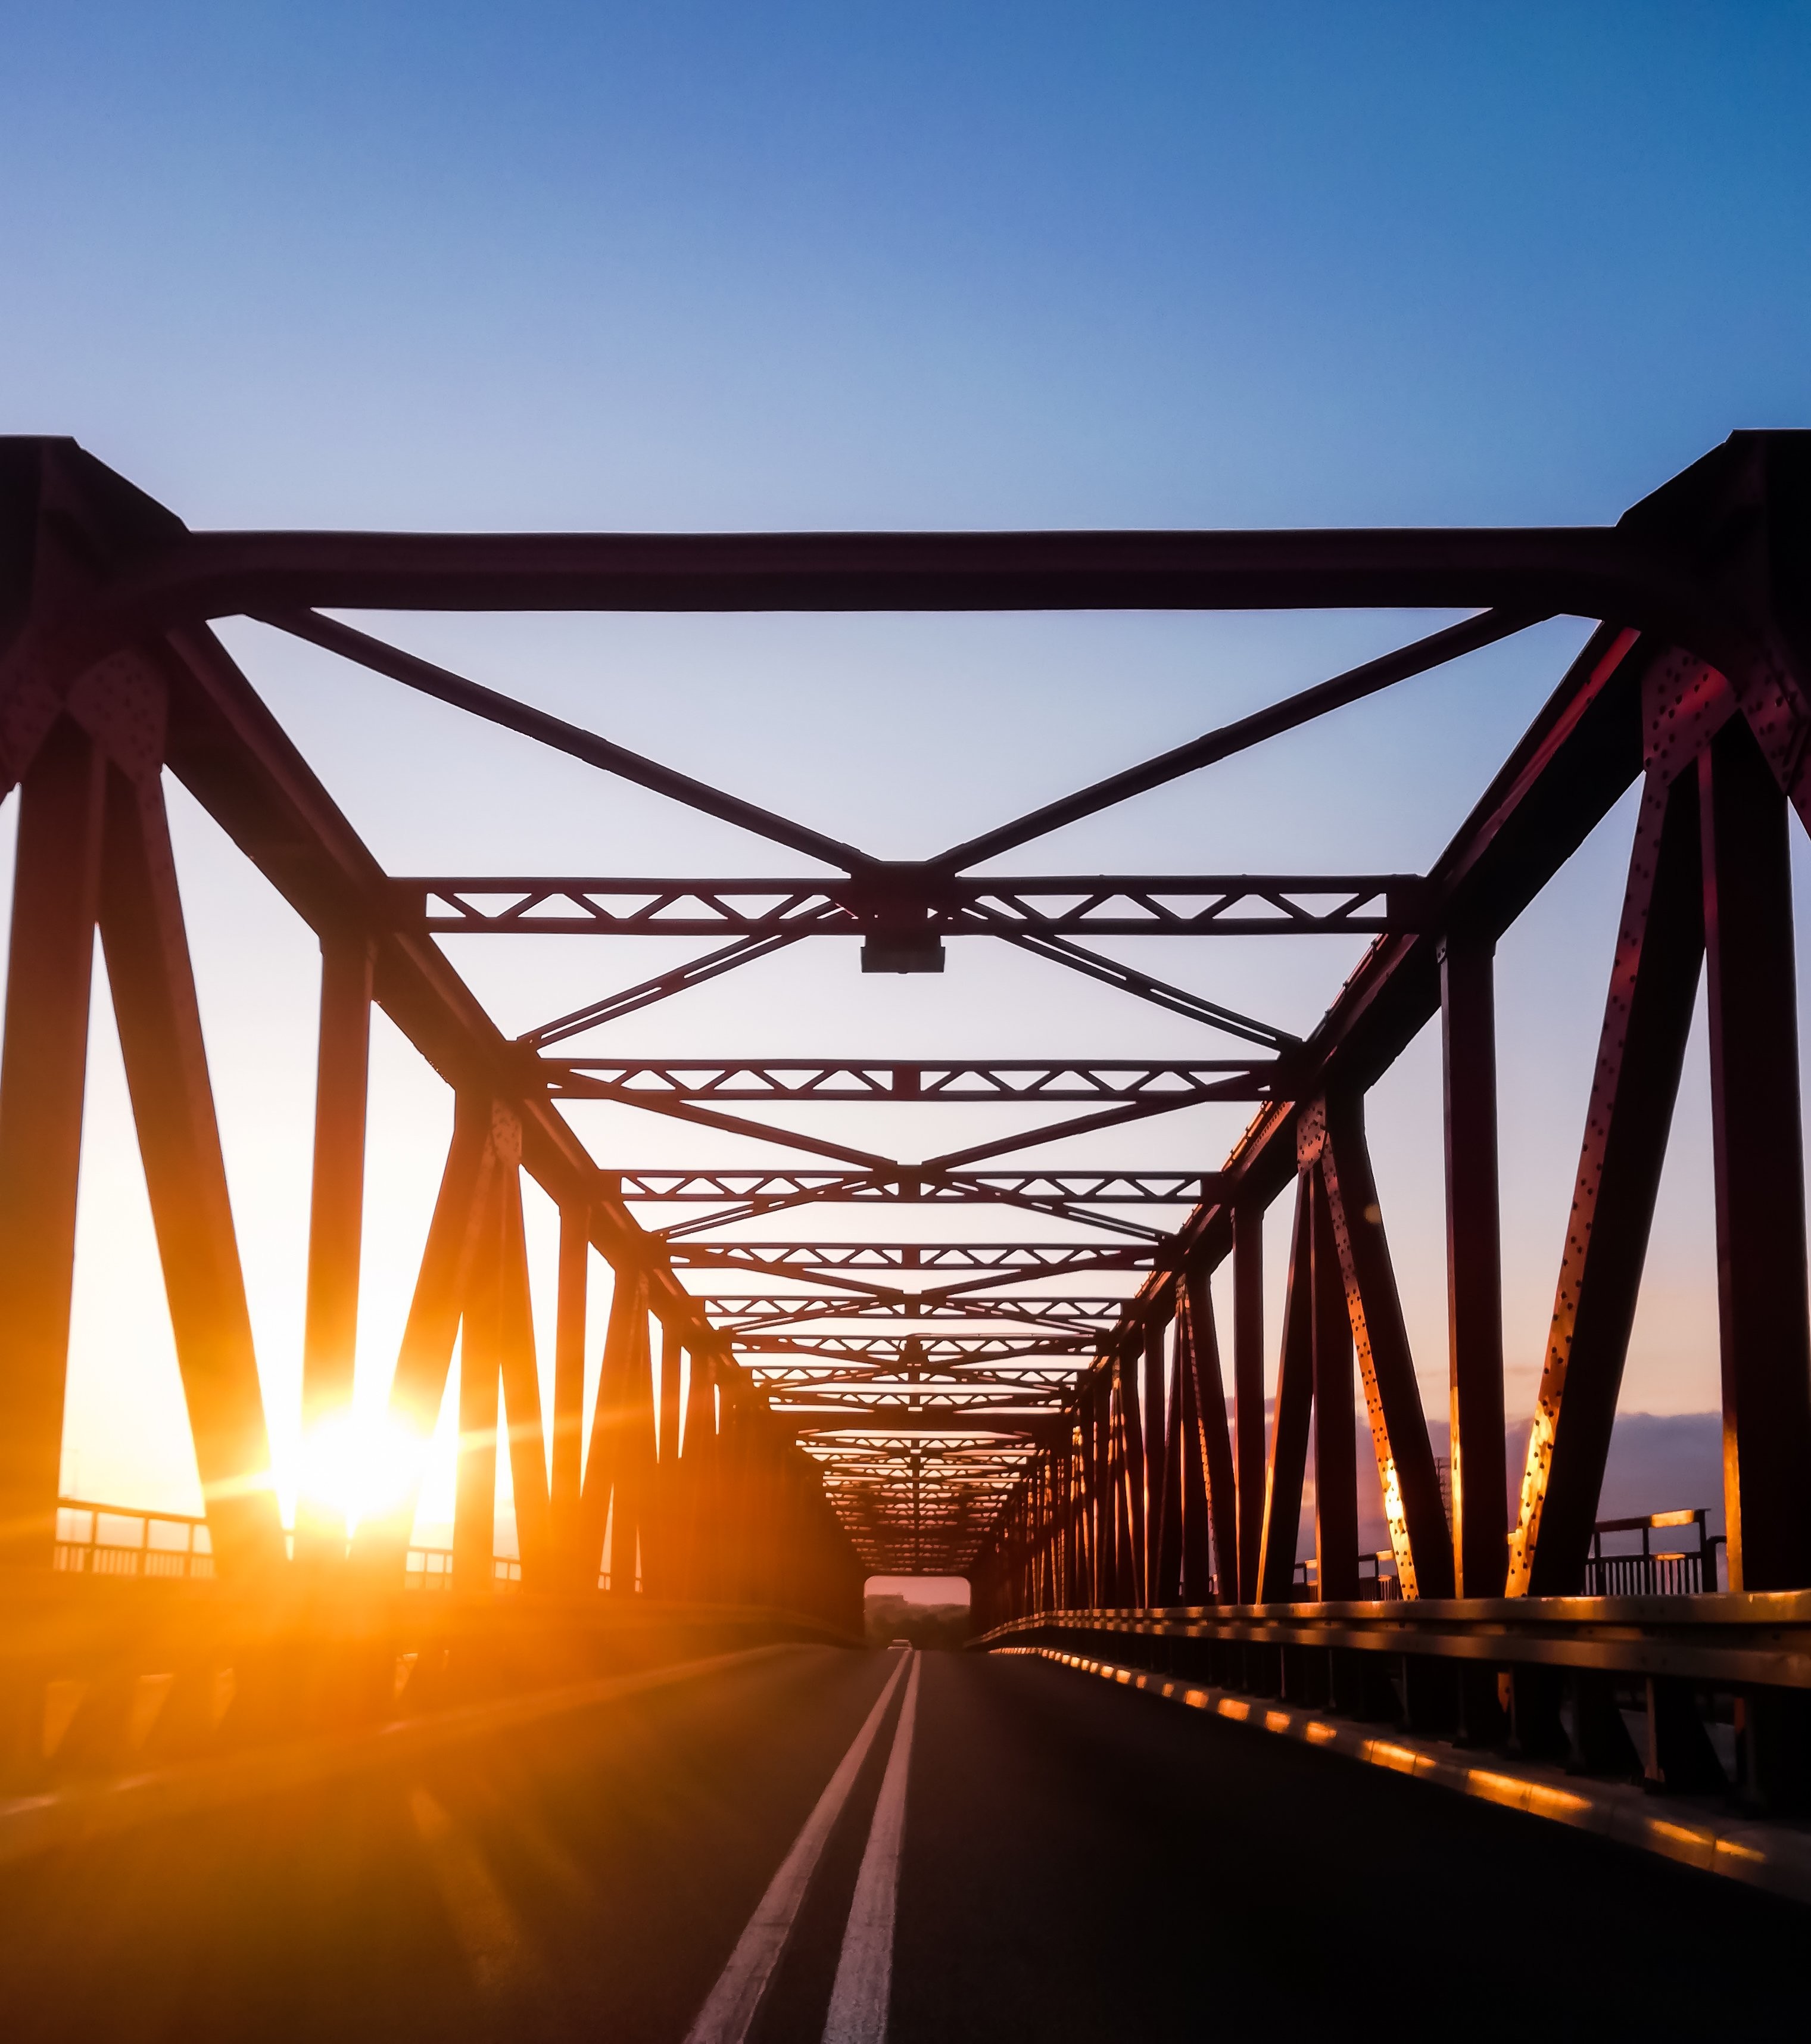 舗装された橋の道の写真を見下ろす夕日 